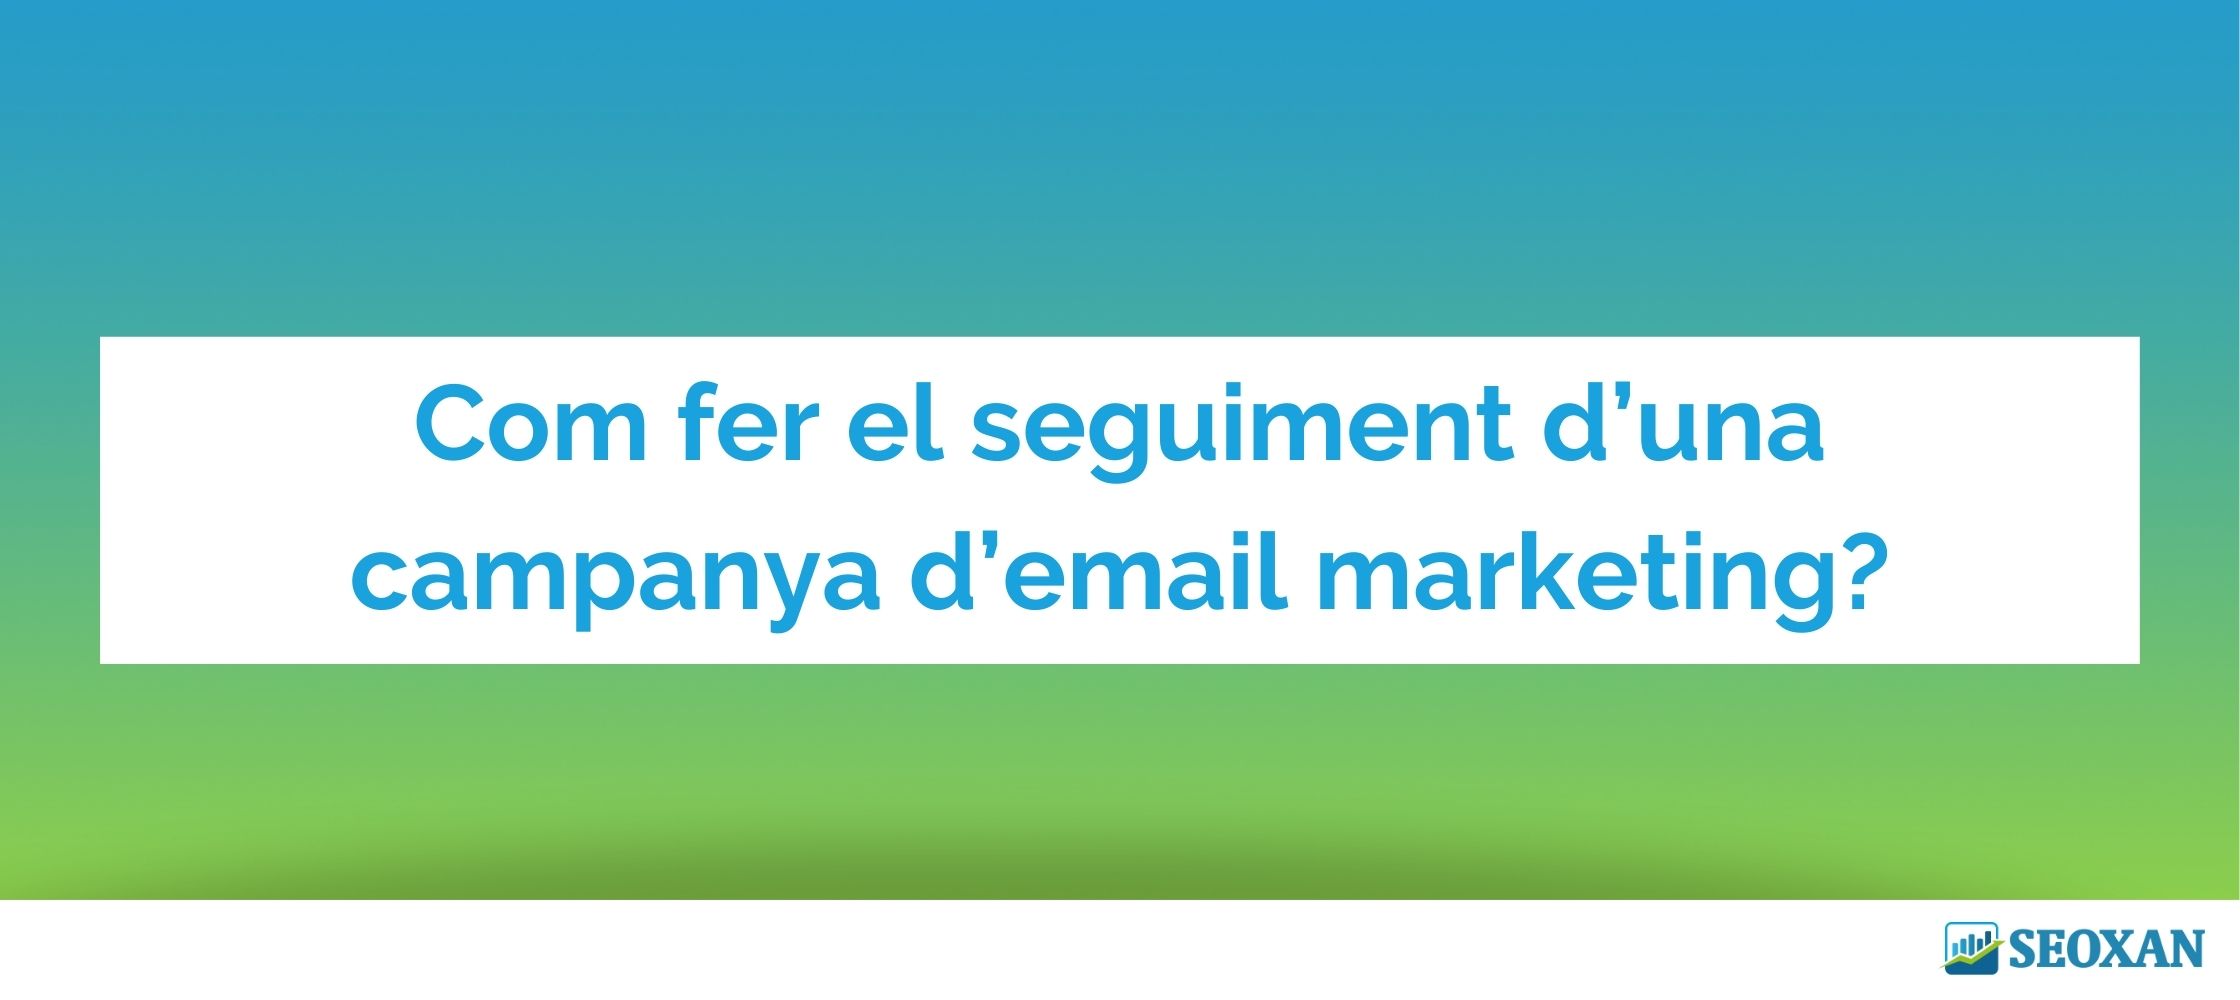 Com fer el seguiment d’una campanya d’email marketing?